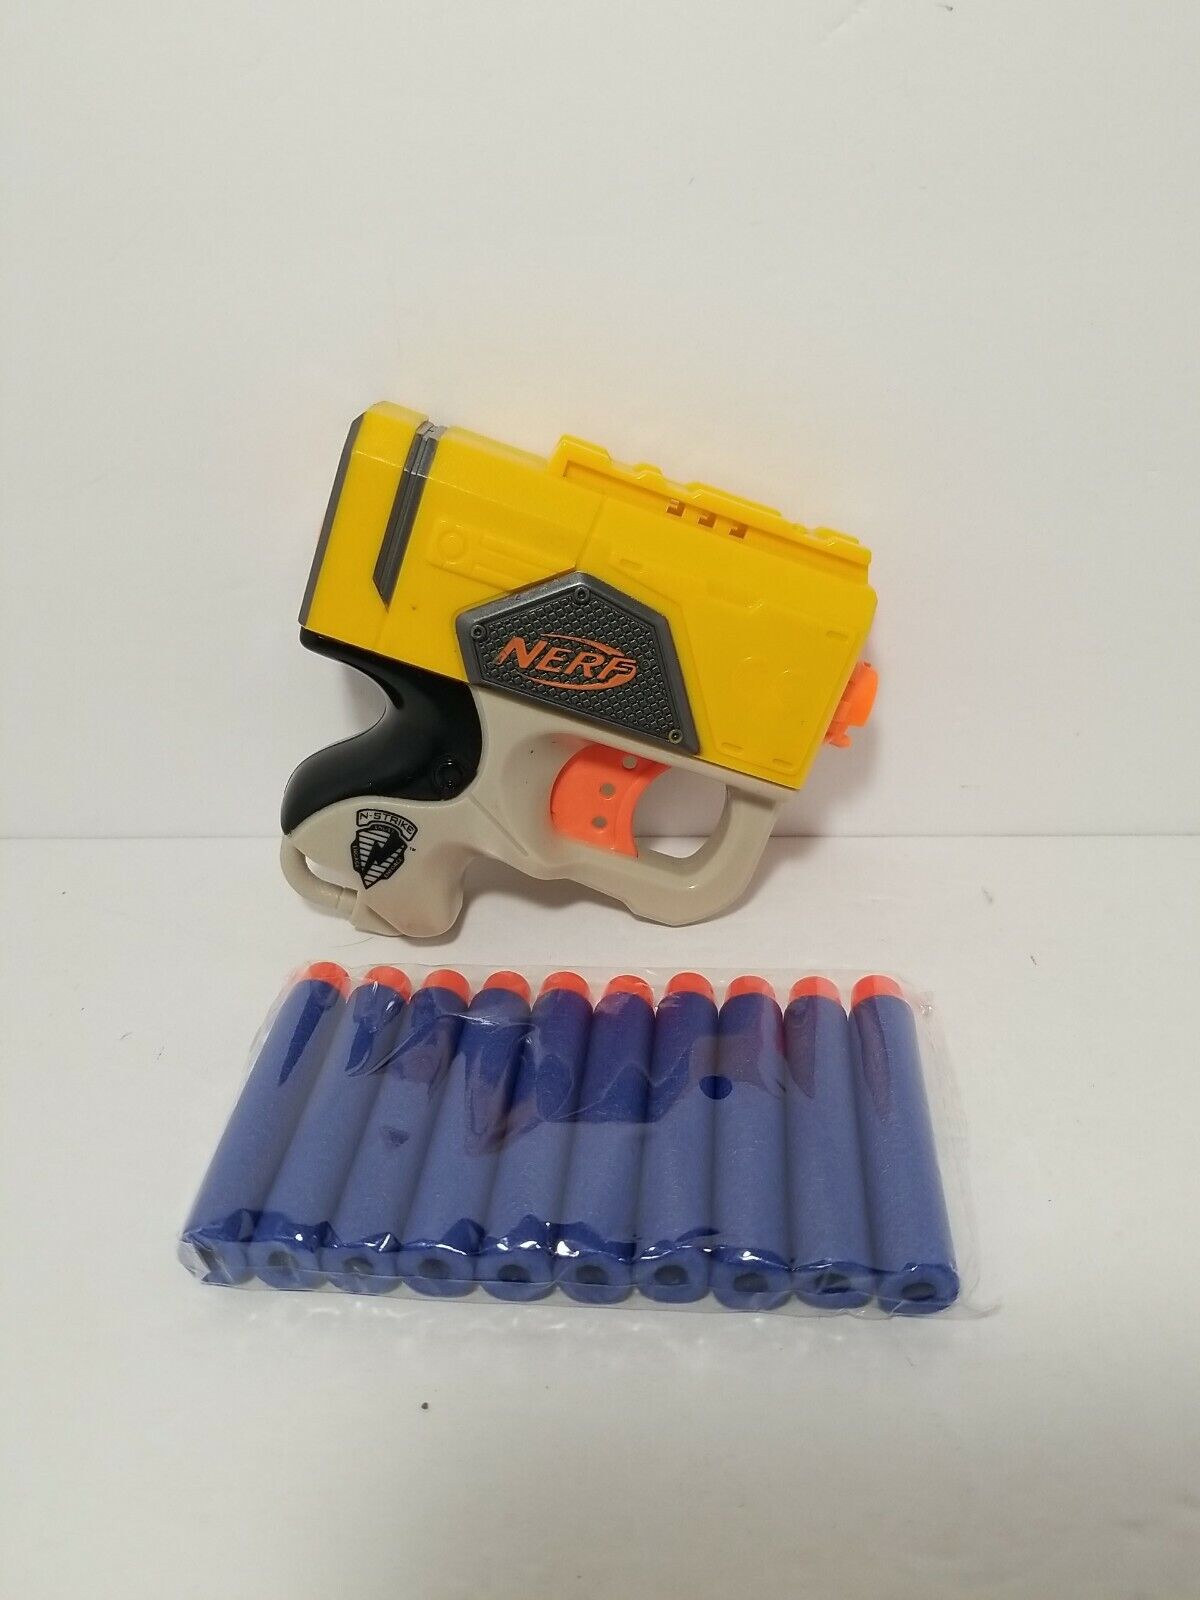 NERF N-Strike Elite Yellow Reflex Pistol Blaster Dart GunÂ w/ 10- pack darts